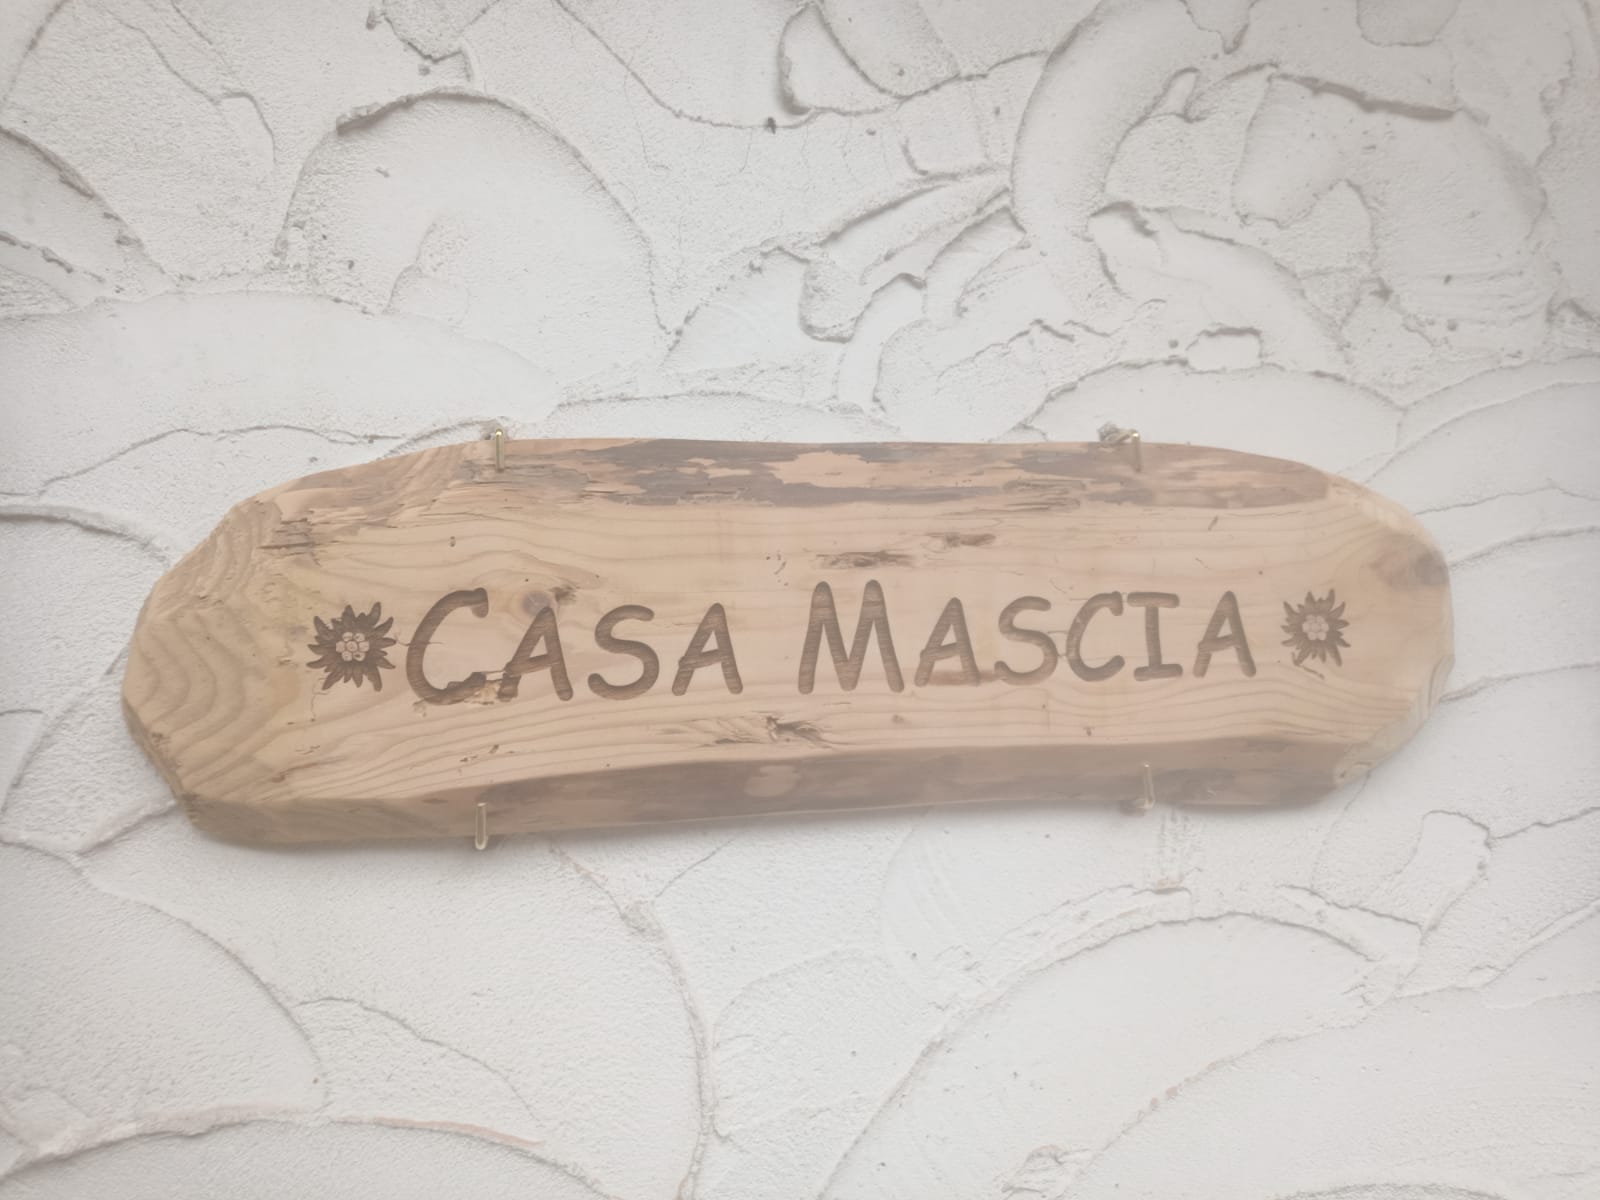 CASA MASCIA - Airbnb